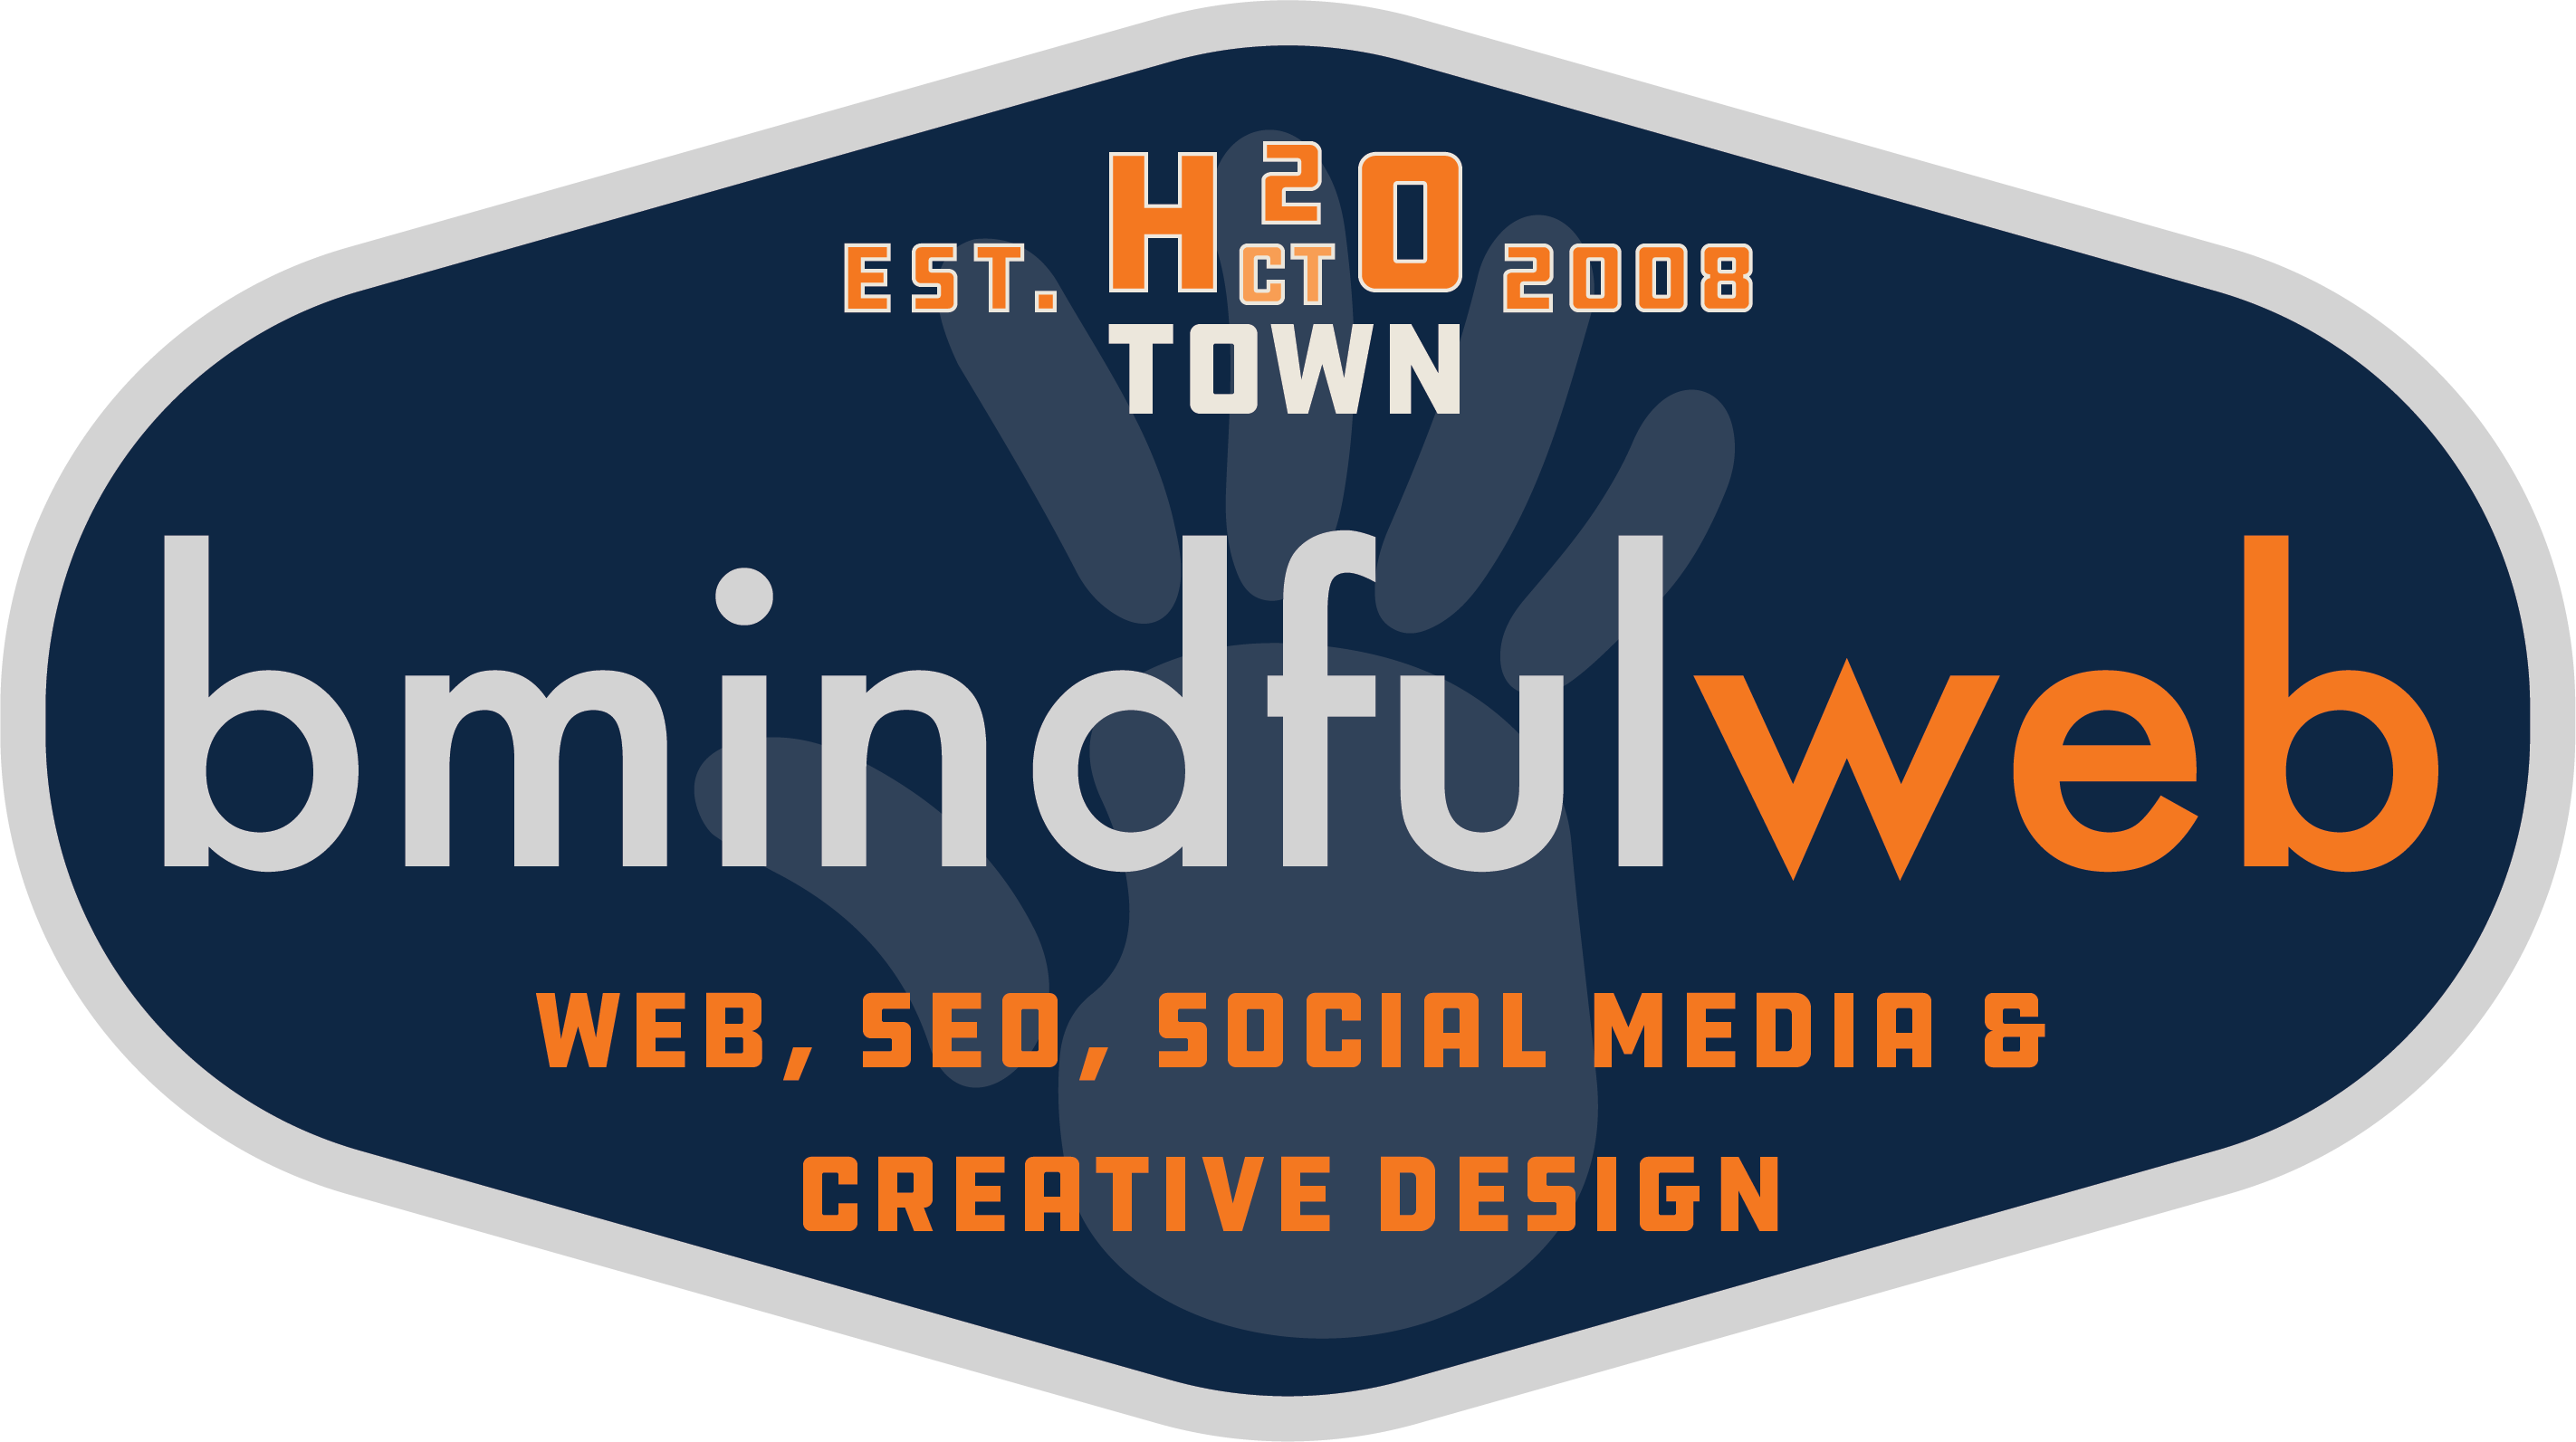 bmindfulweb-Logo-April-2020